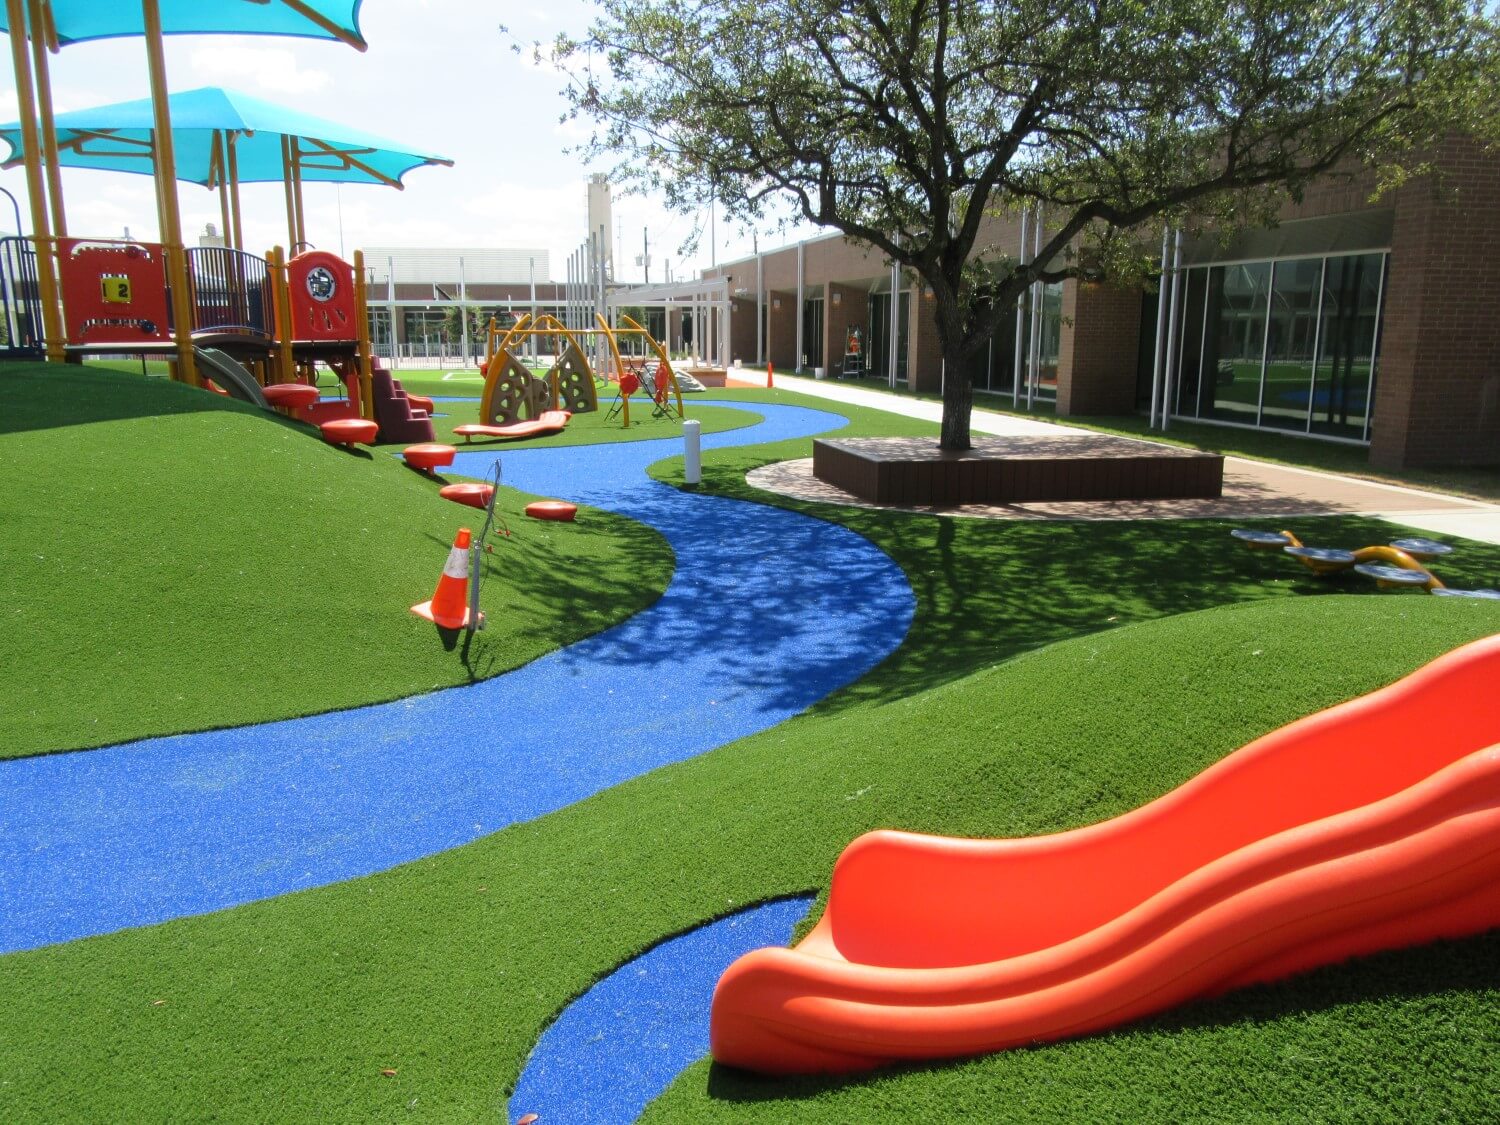 Orange slide on artificial playground grass